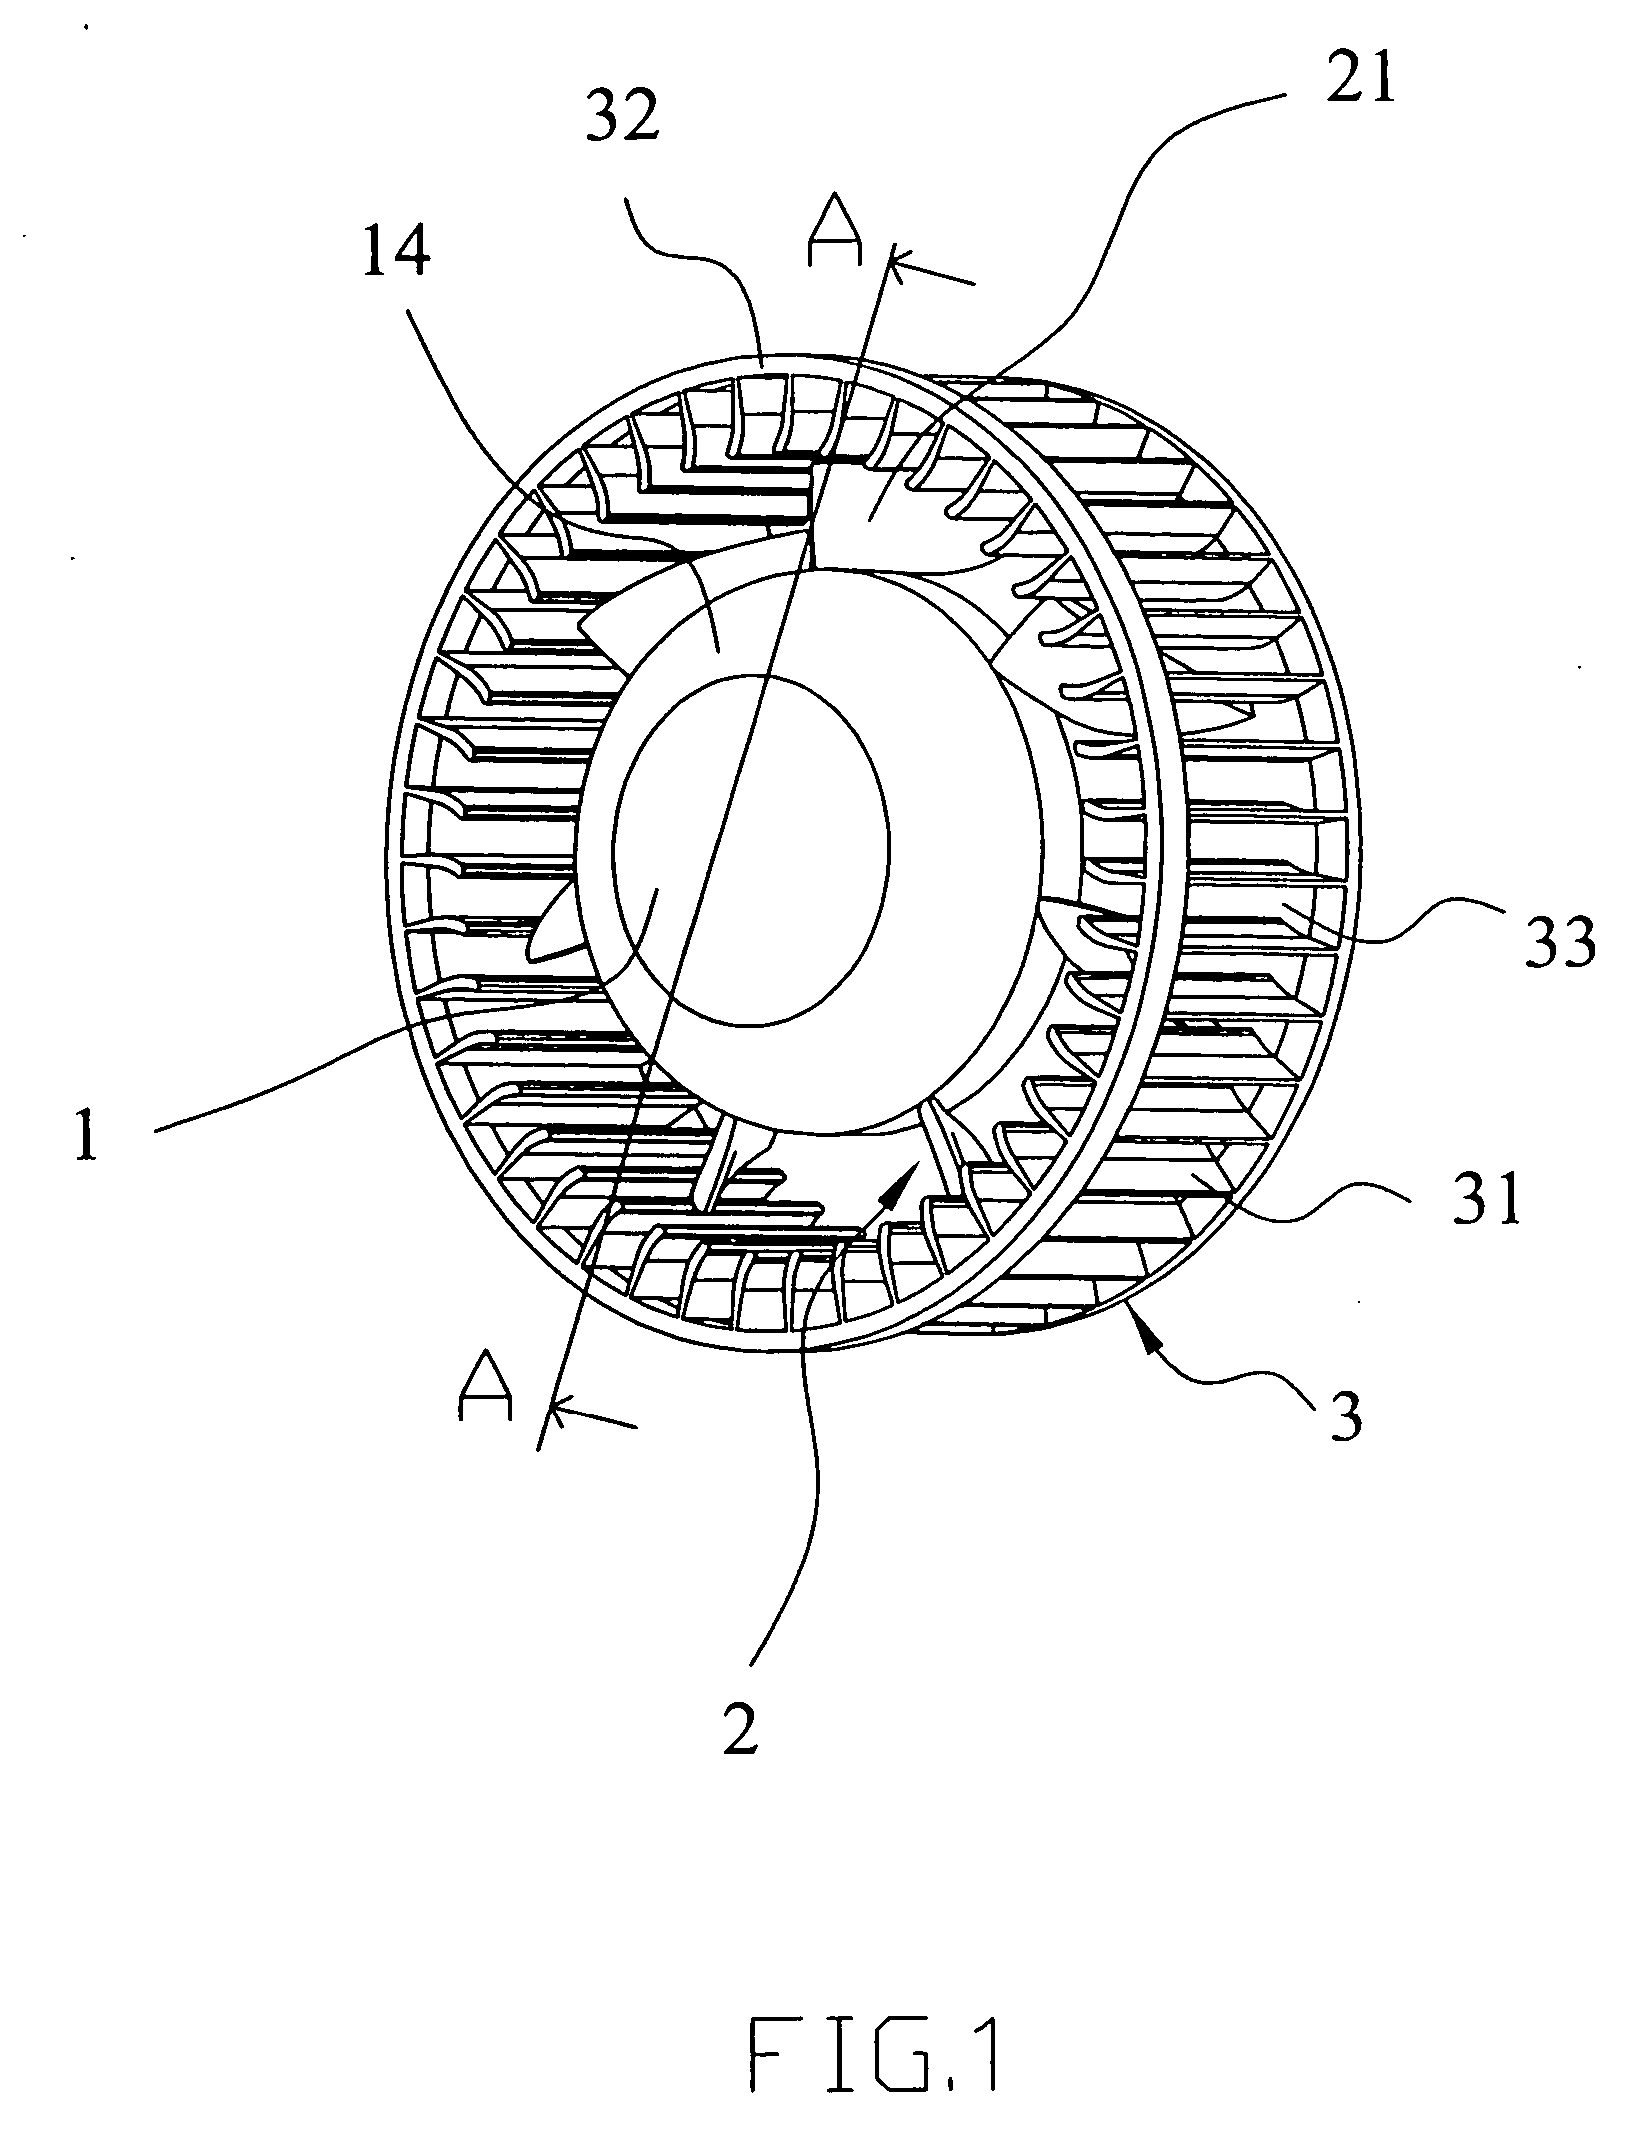 Radial fan having axial fan blade configuration